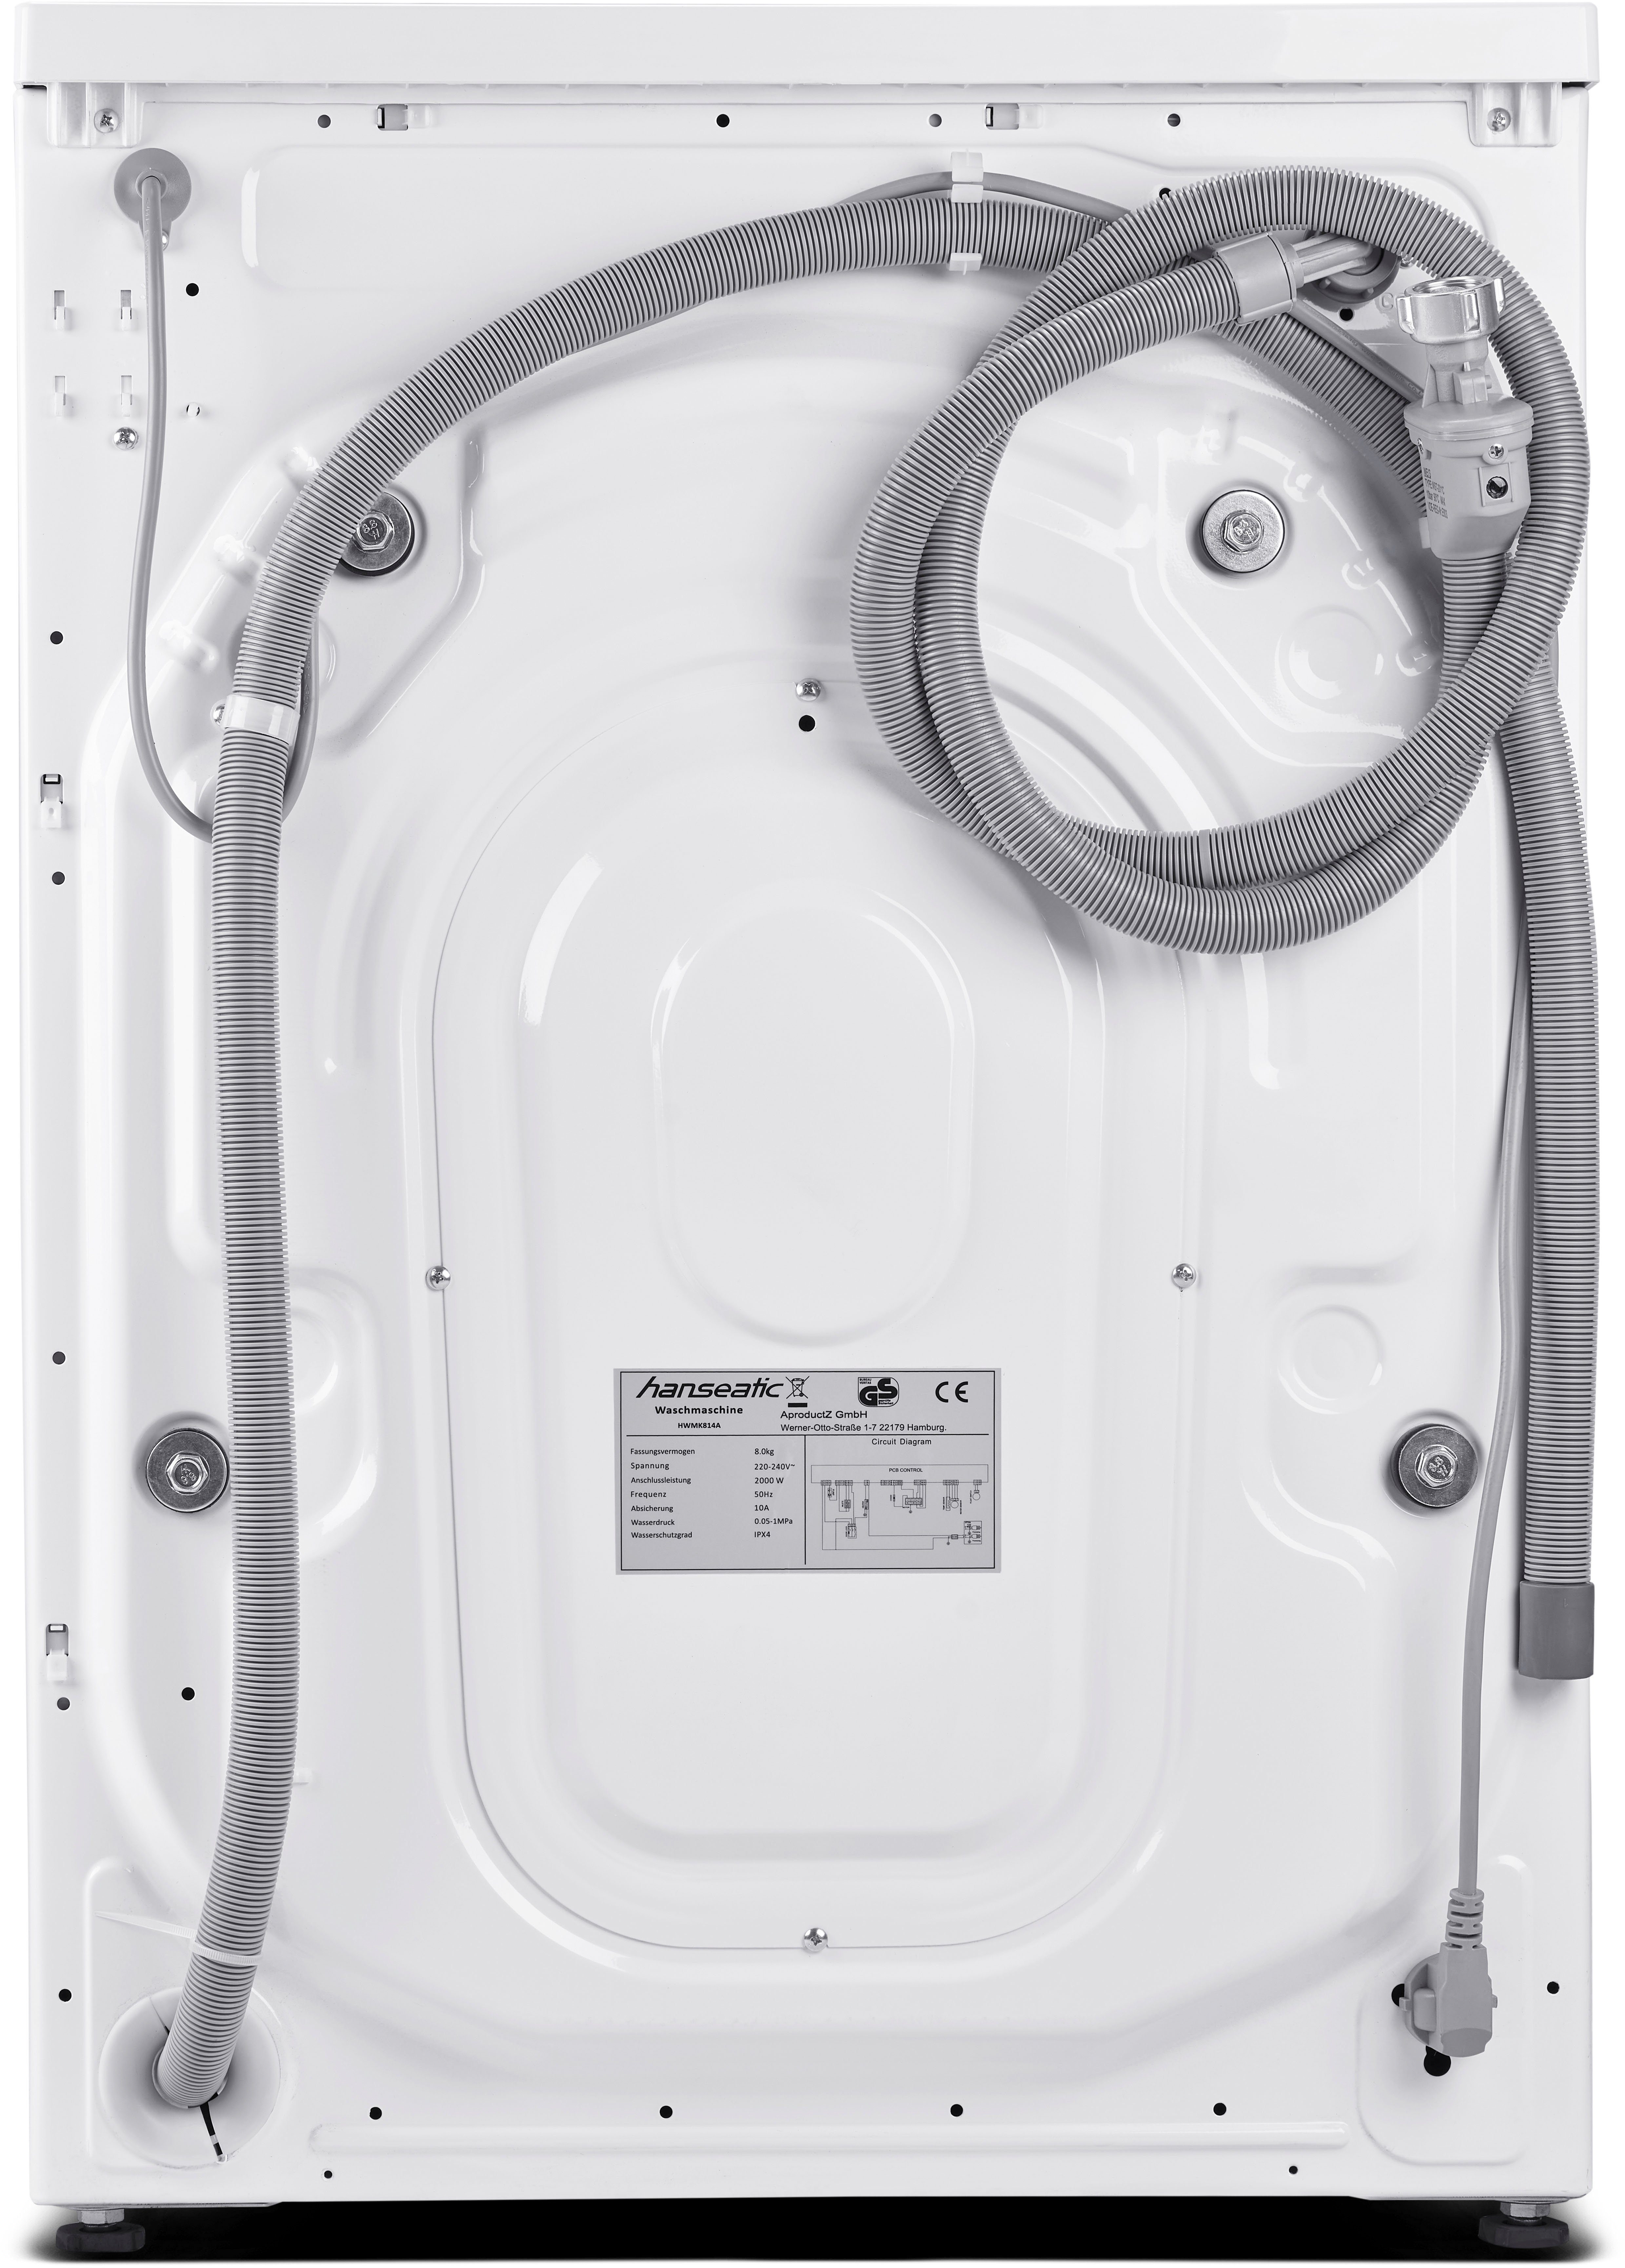 Nachtwaschprogramm, Dampfoption Mengenautomatik, 1400 HWMK814A, Hanseatic 8 U/min, kg, Überlaufschutz, Waschmaschine